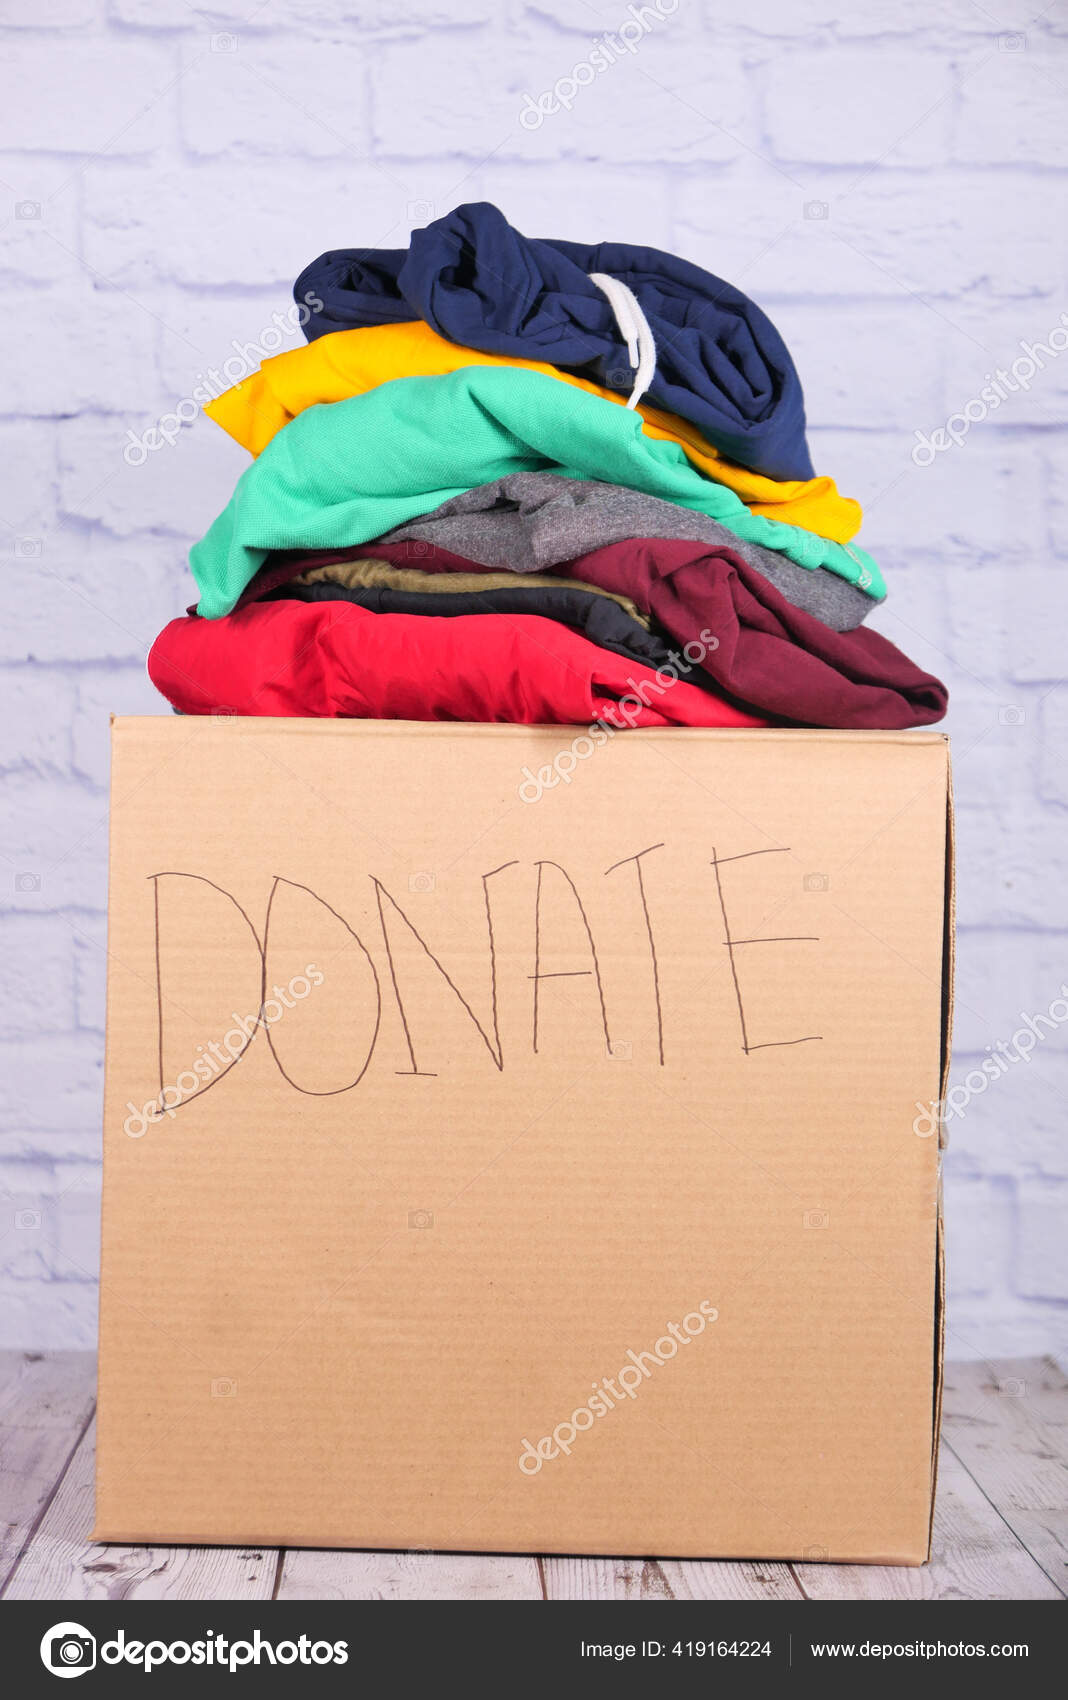 Donation boks med donation tøj et . Stock-foto © Towifqu #419164224